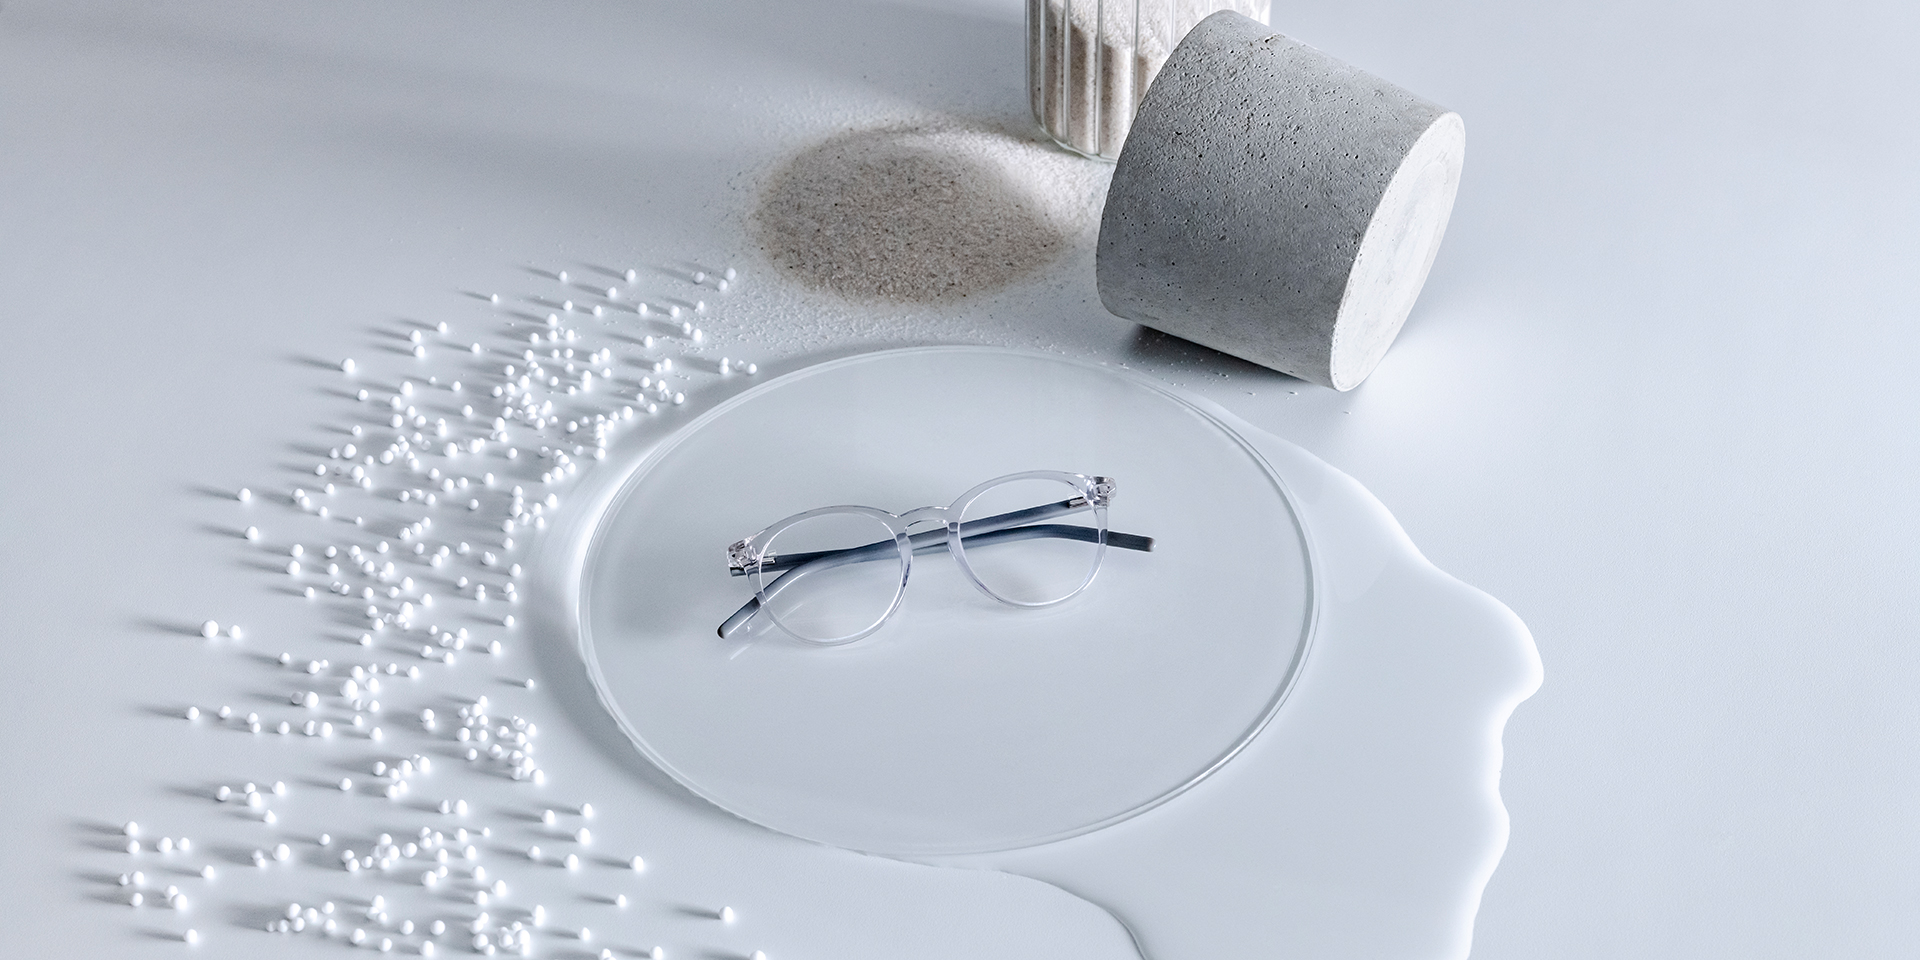 ZEISS brilleglas med DuraVision® coating anbragt på en glassokkel, omgivet af vand, sand, kugler og sten.